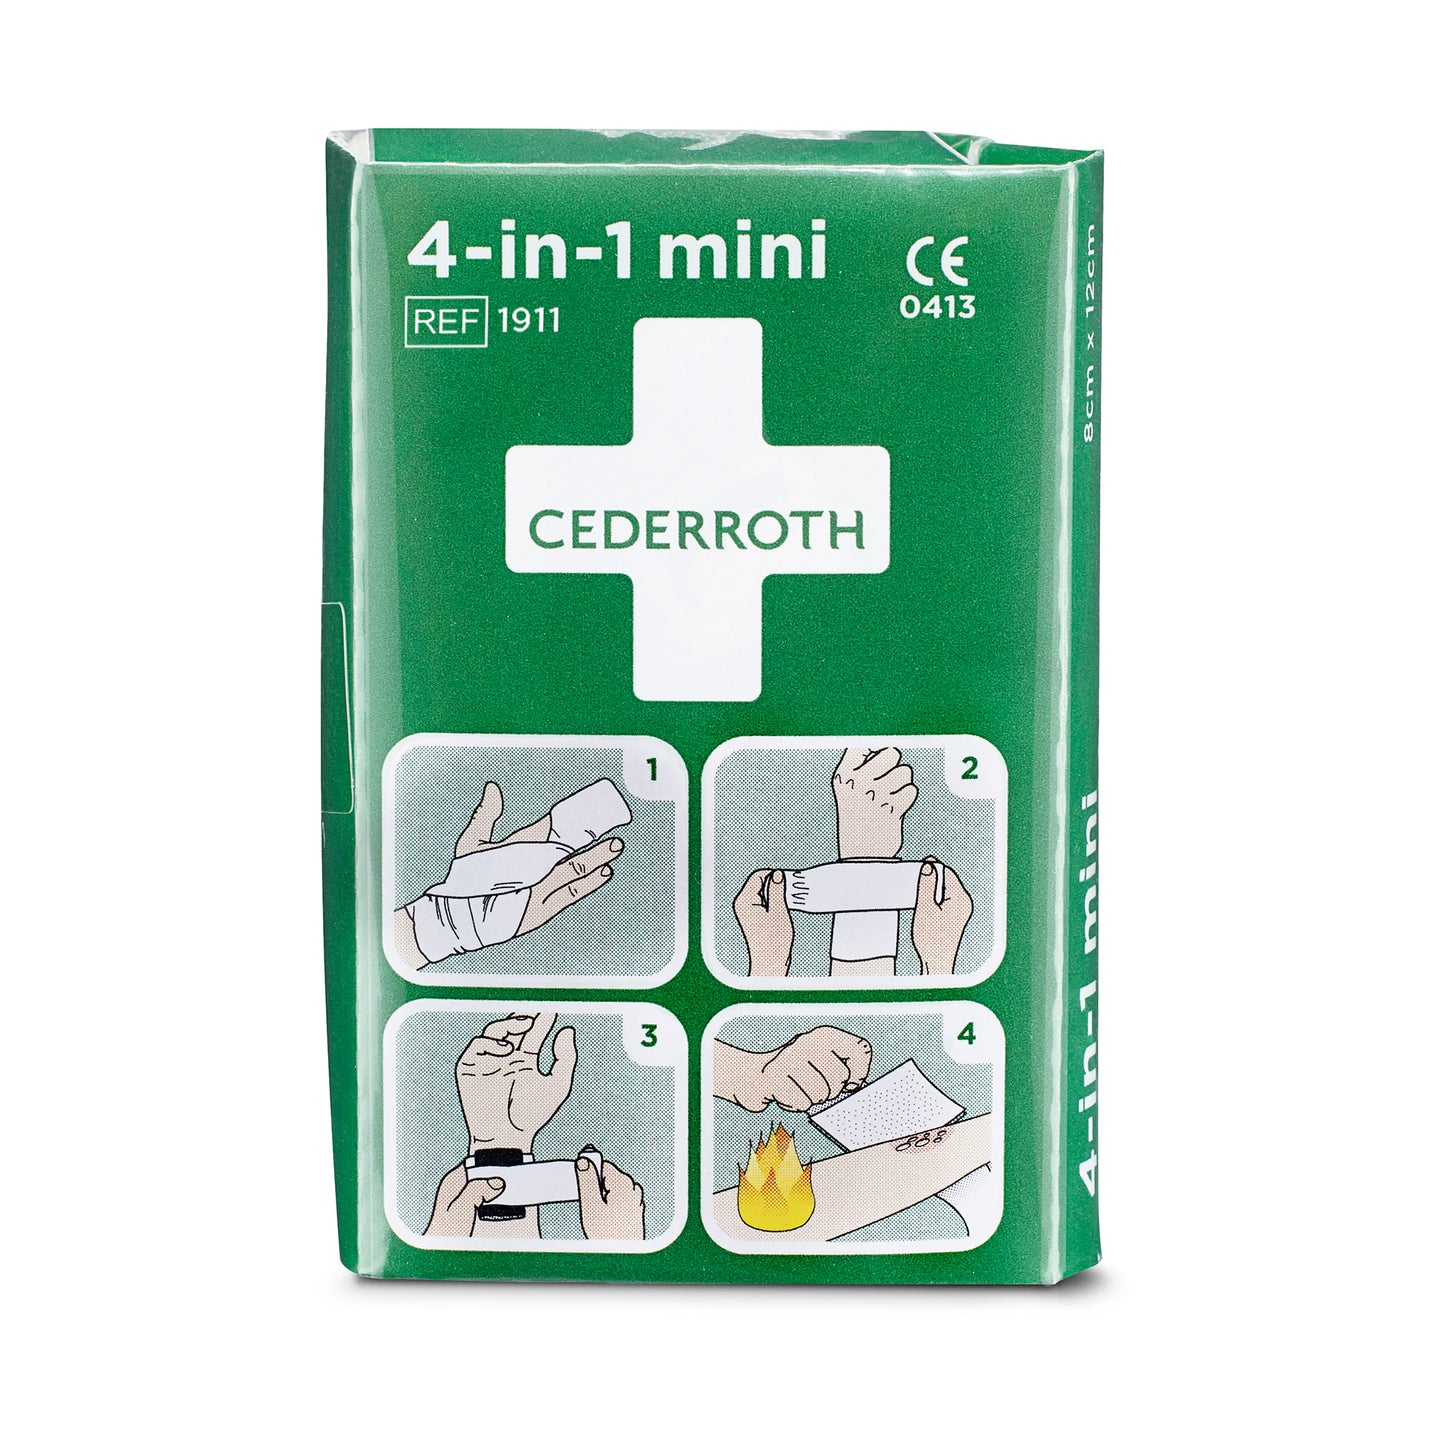 Cederroth 4-In-1 Mini Bloodstopper